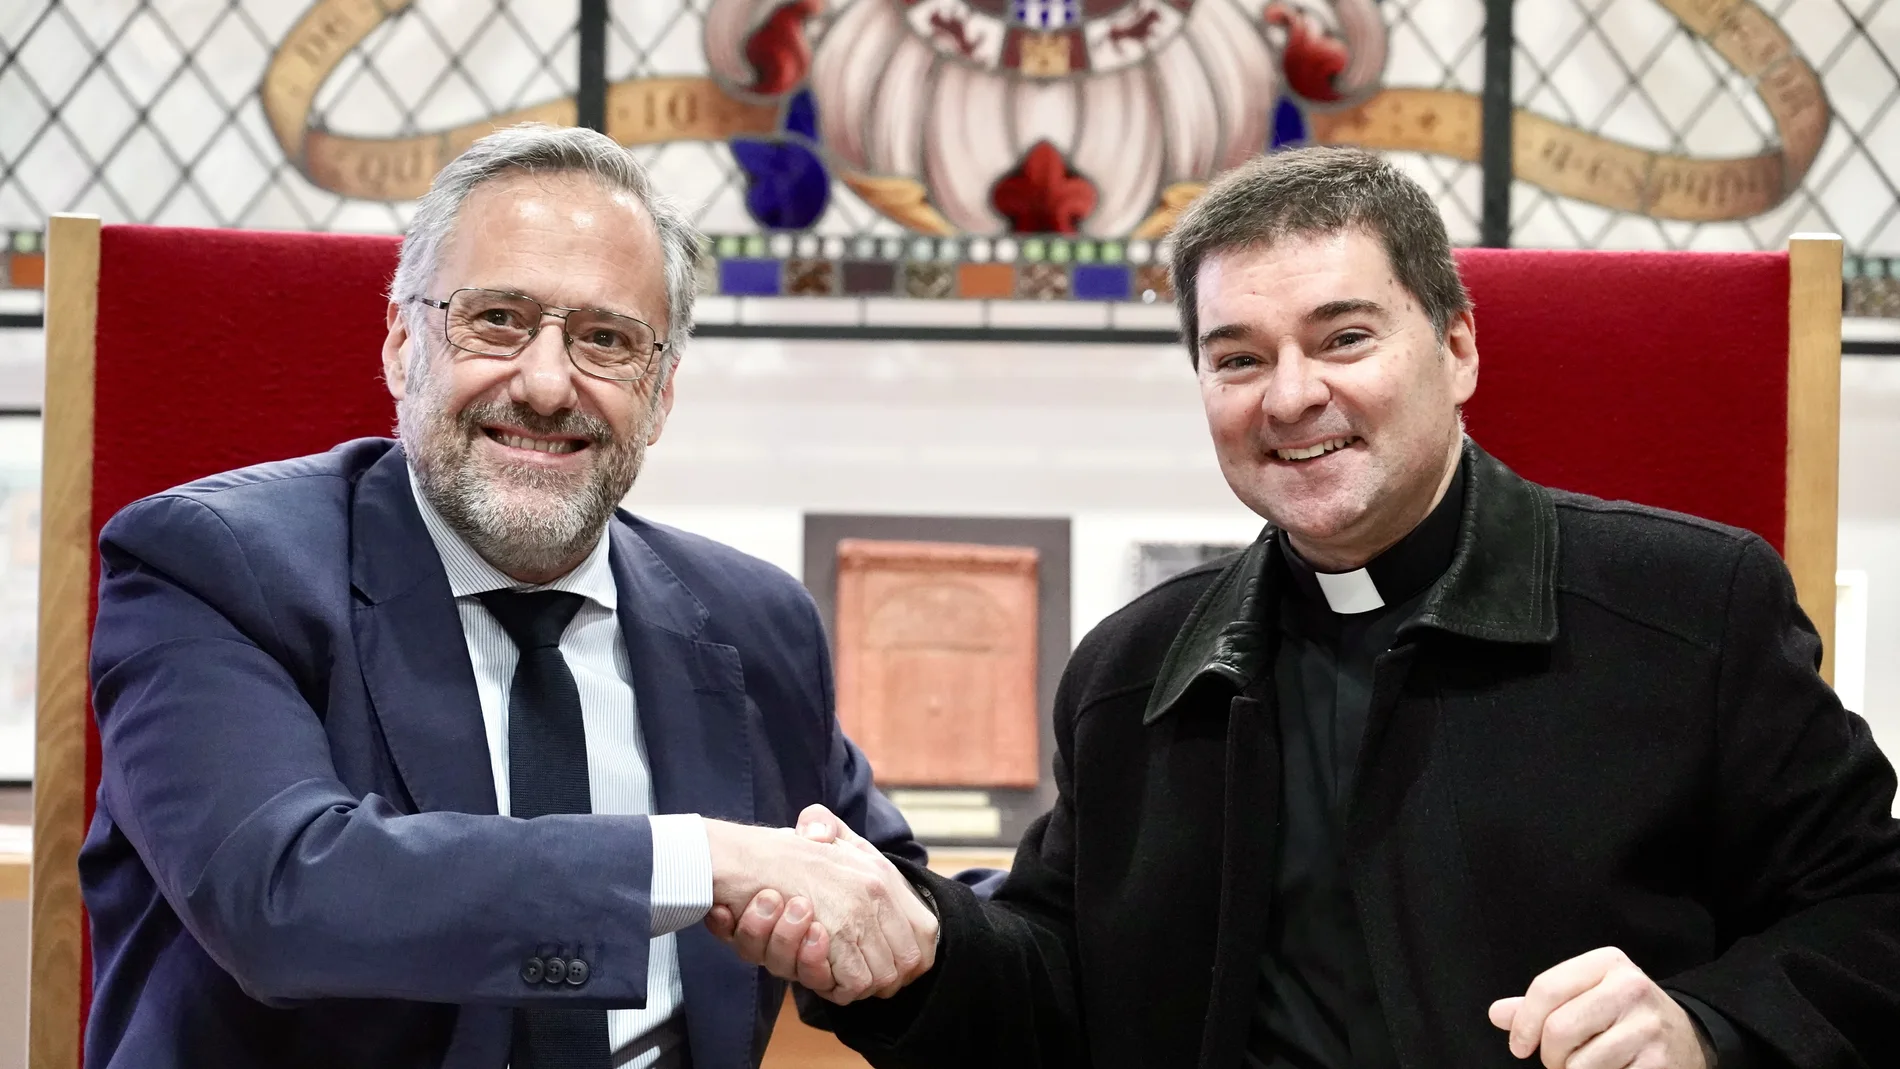 El presidente de las Cortes de Castilla y León, Carlos Pollán, el abad de la Basílica de San Isidoro, Luis García, firman un convenio de colaboración entre ambas entidades